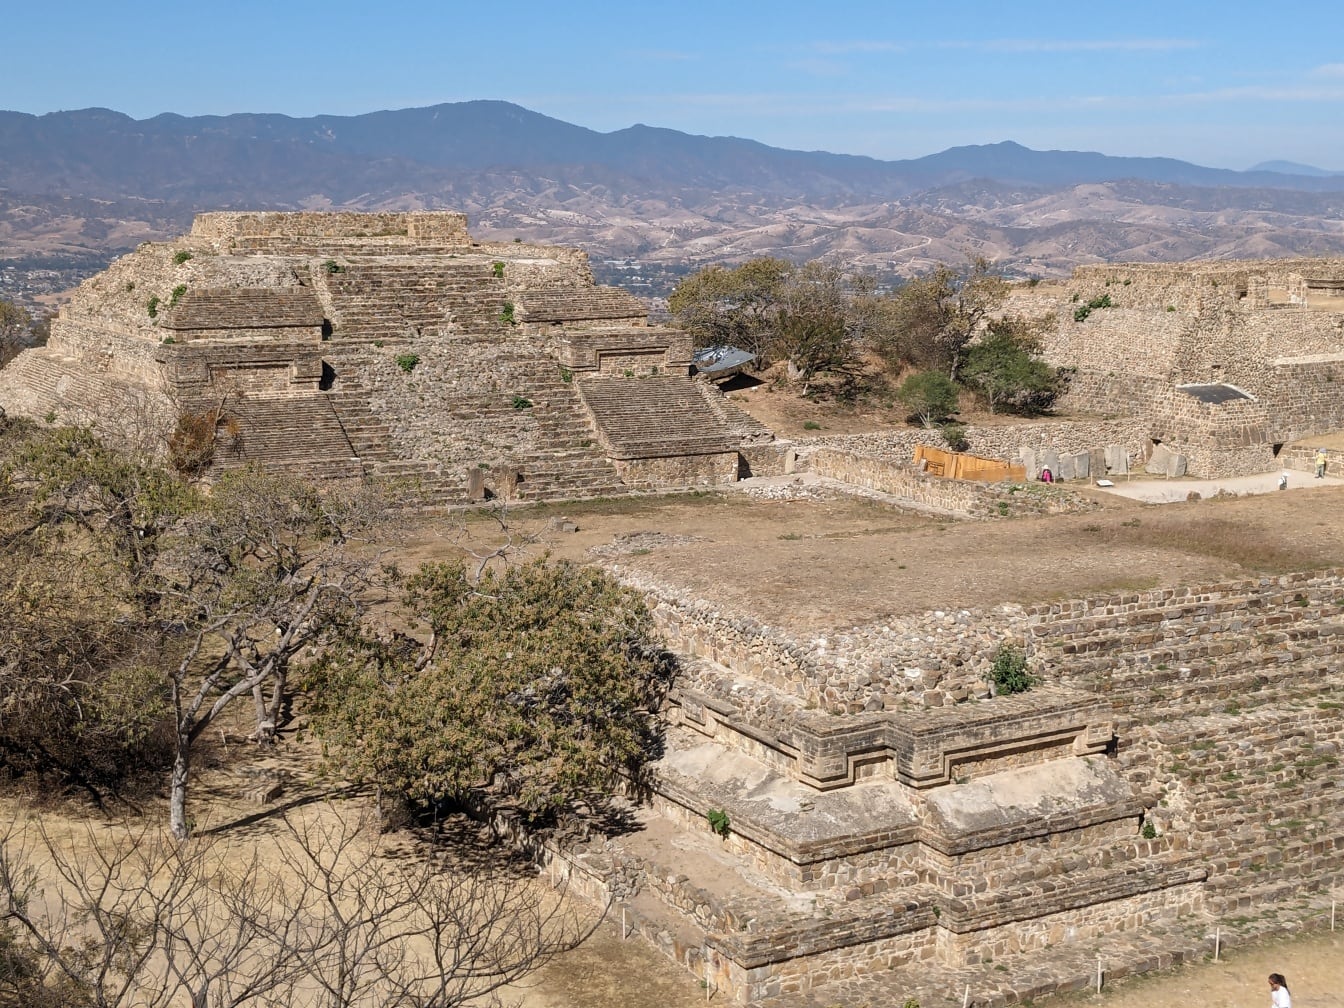 멕시코의 유명한 관광 명소 인 돌 피라미드의 조감도